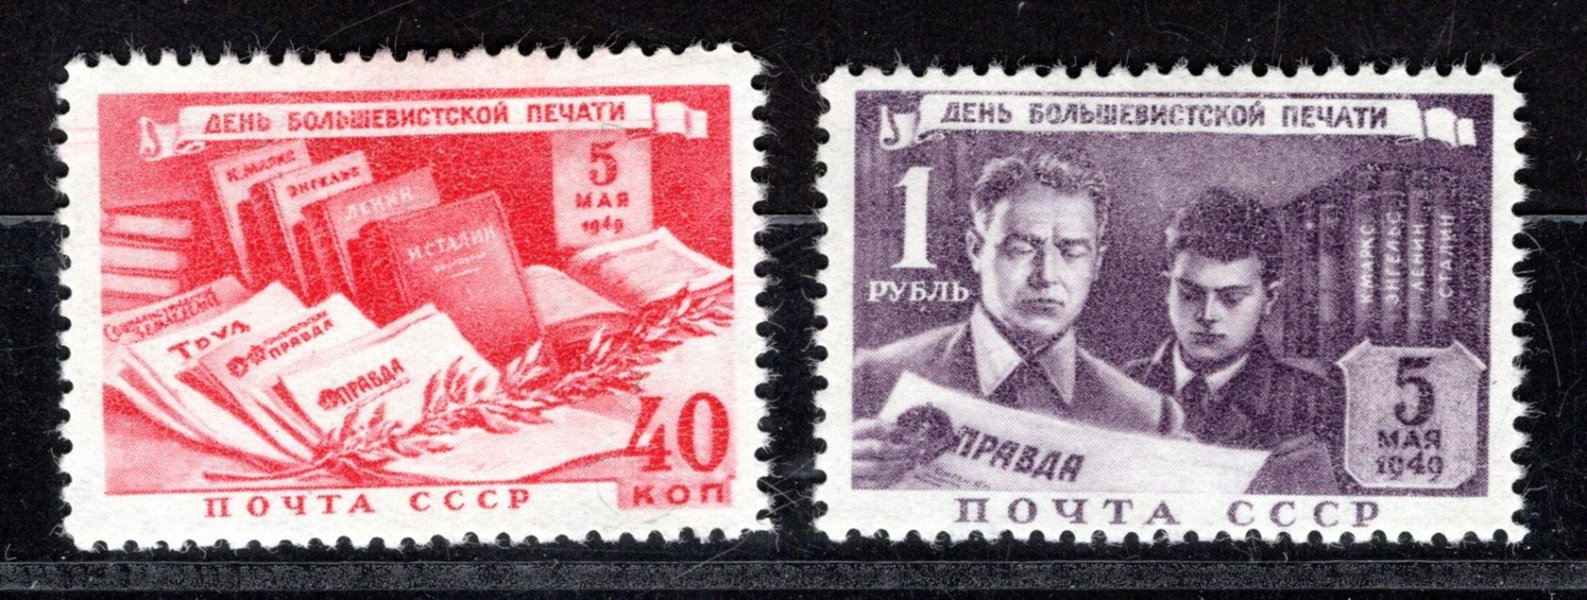 Sovětský svaz - Mi. 1343 - 4, den tisku